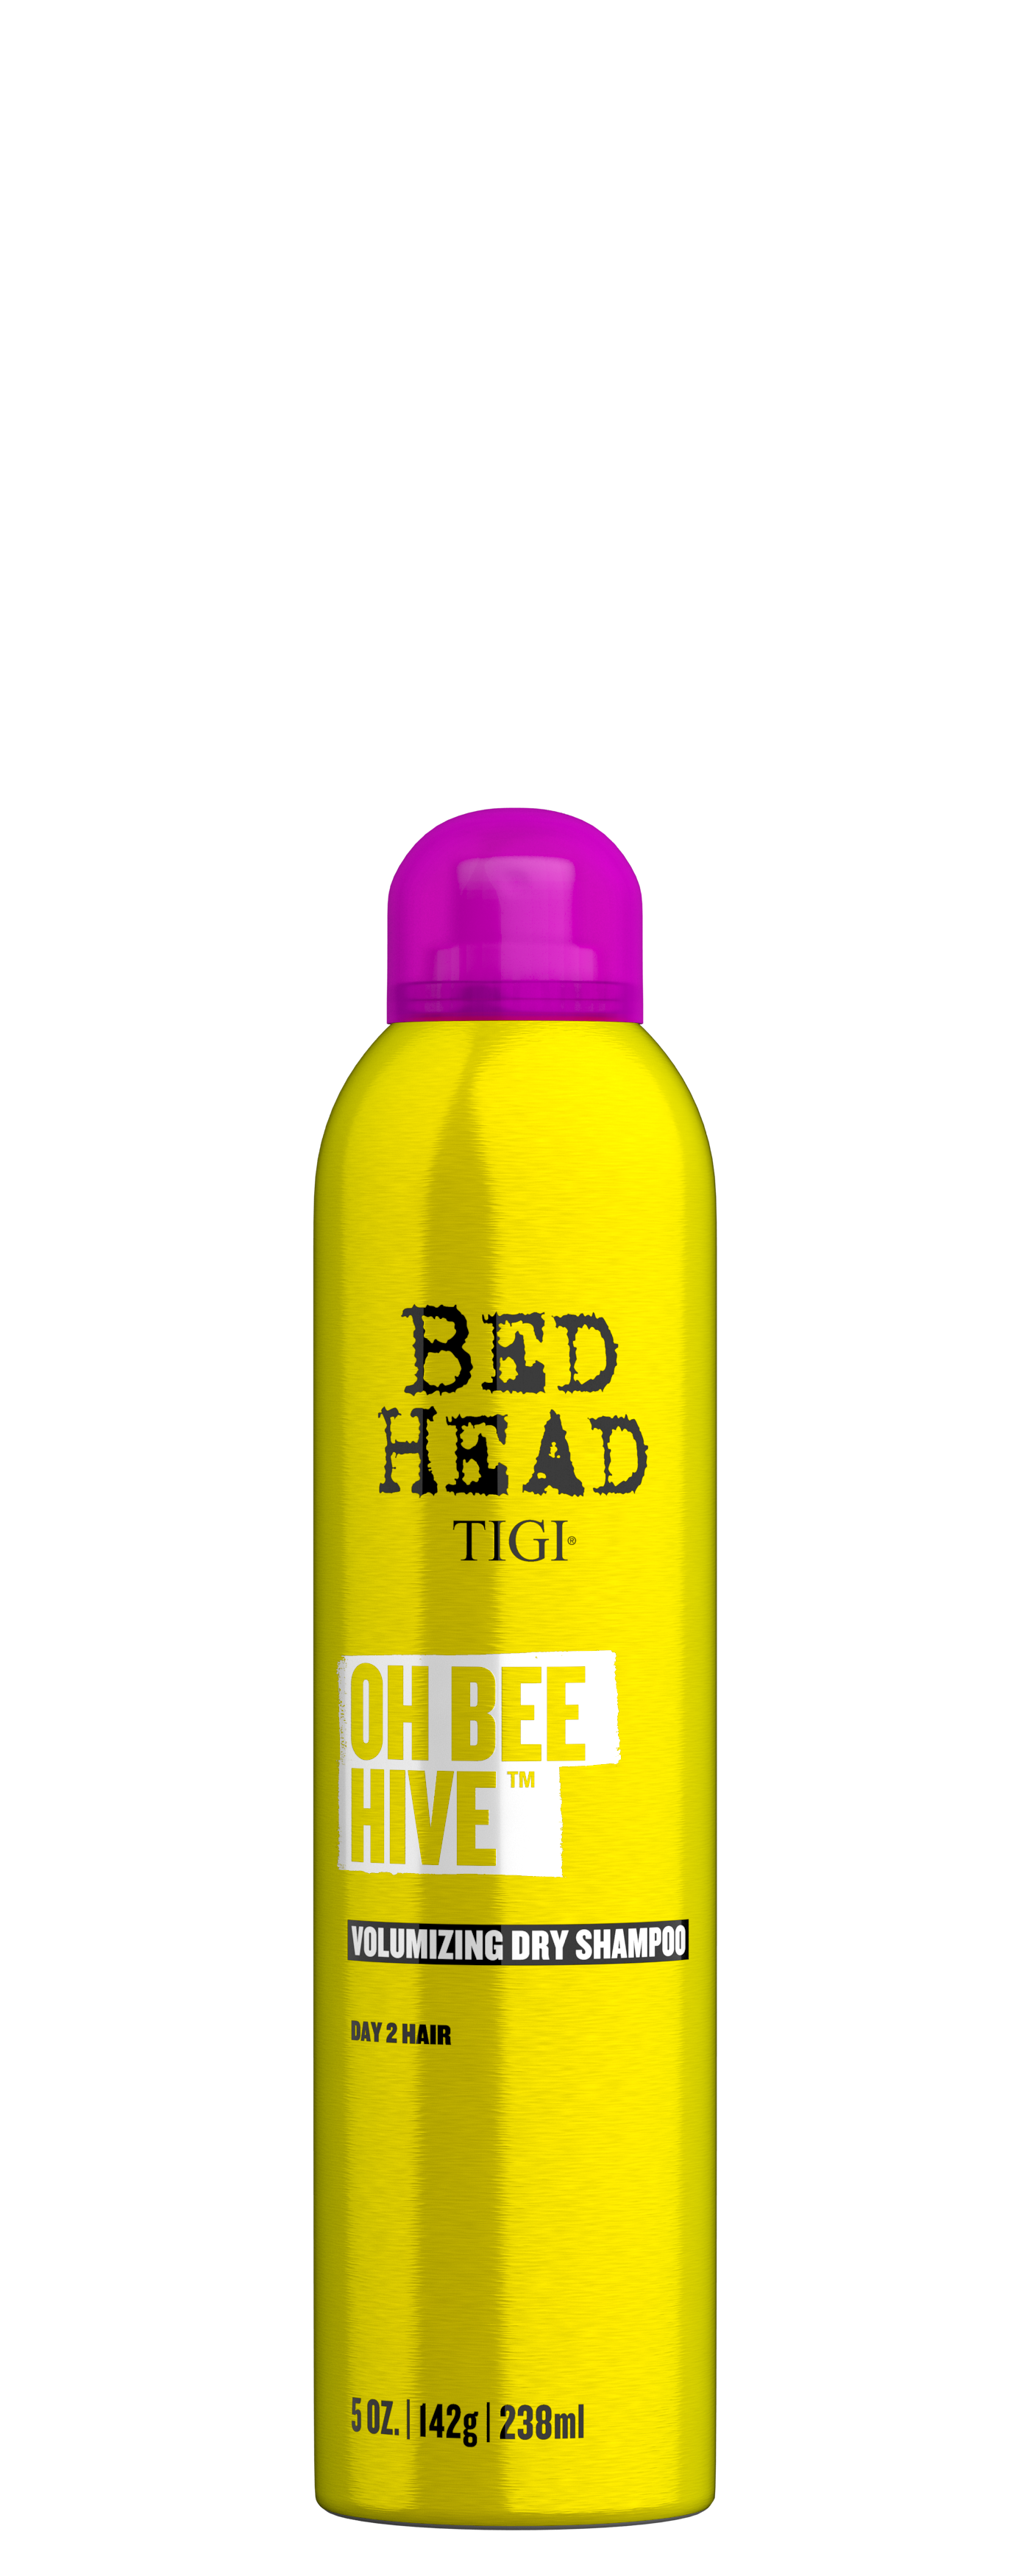 Сухие шампуни для волос:  TIGI -  Сухой шампунь для придания объема волосам OH BEE HIVE BED HEAD (238 мл)